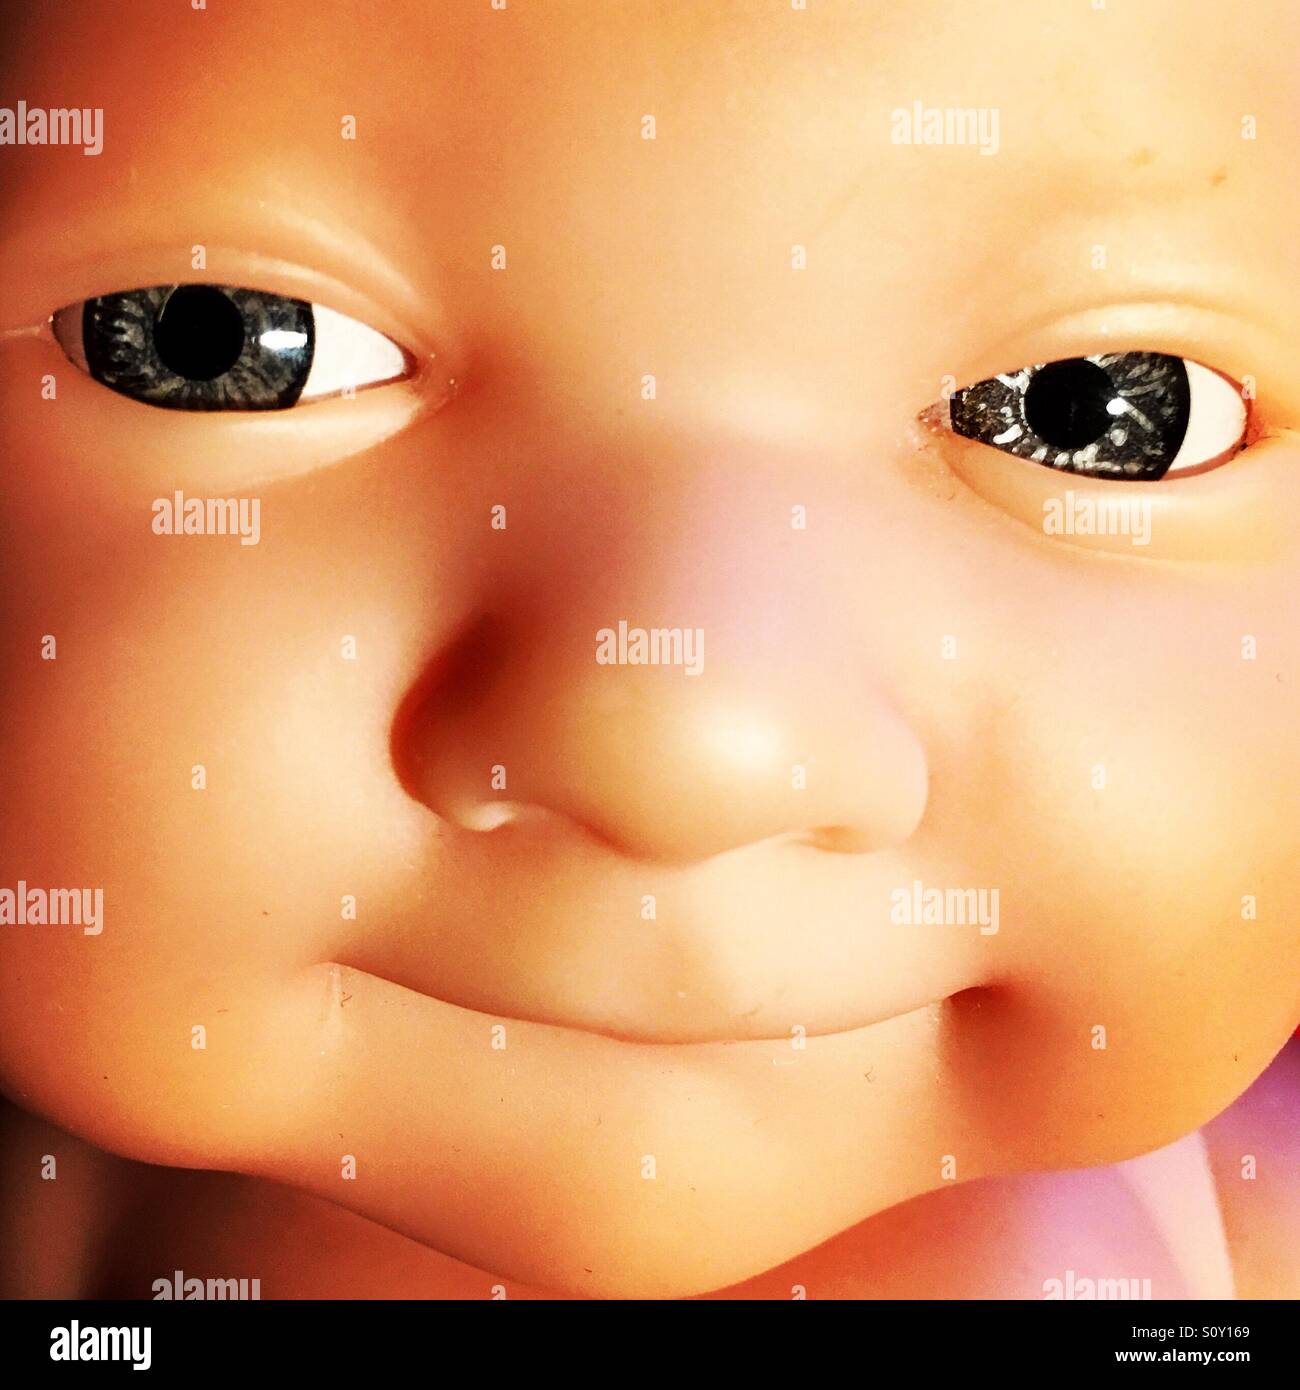 Lifelike baby toy. Stock Photo